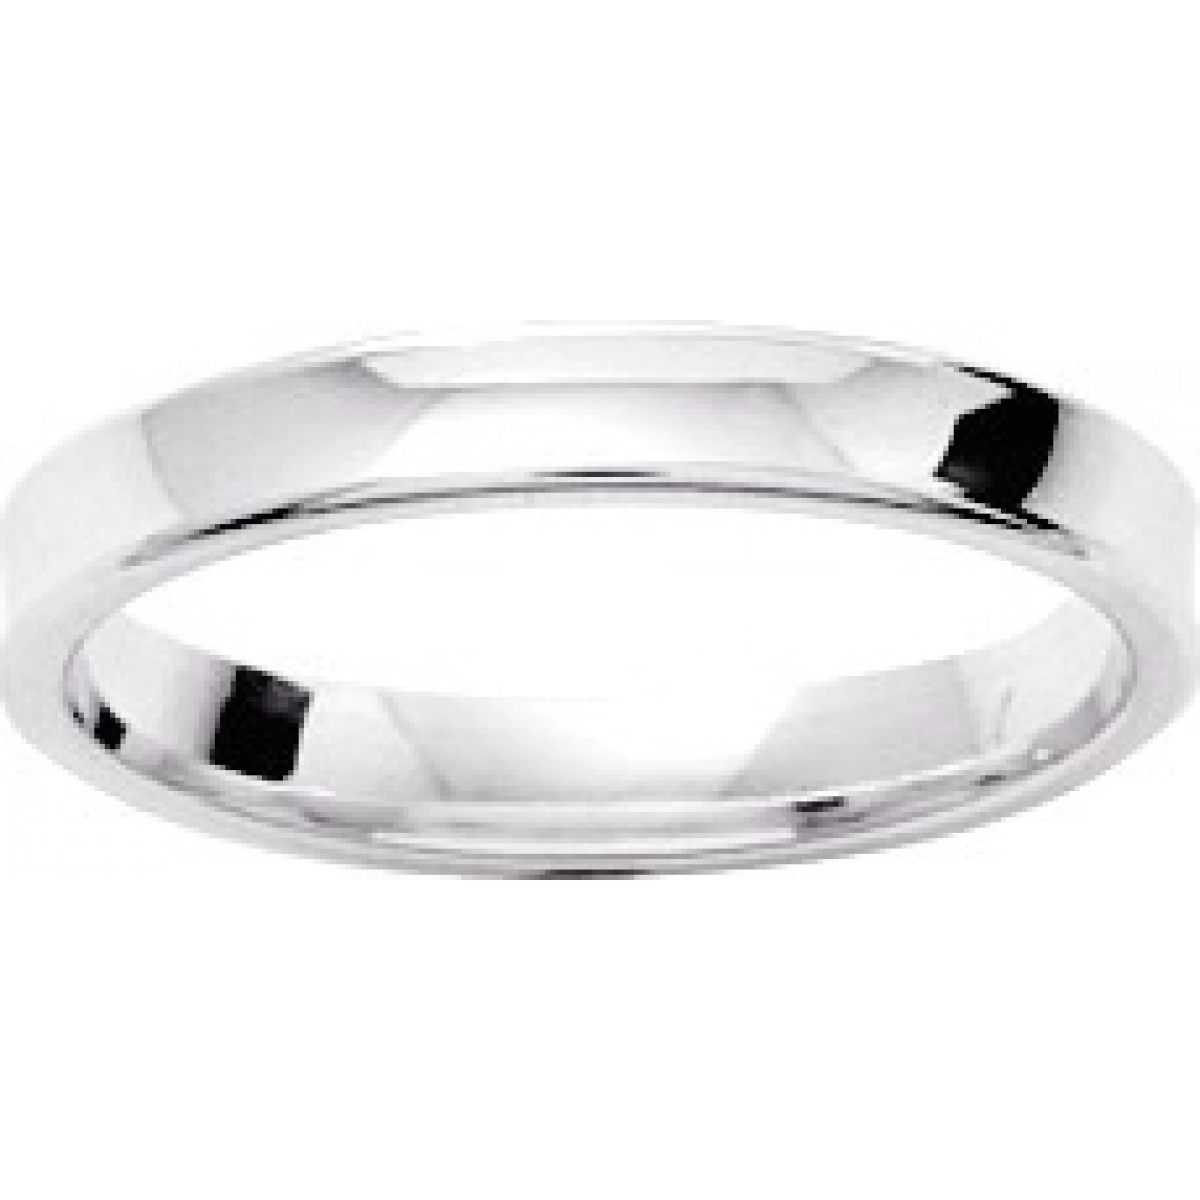 Wedding ring 3mm rh925 Silver - Size: 54  Lua Blanca  307788.14